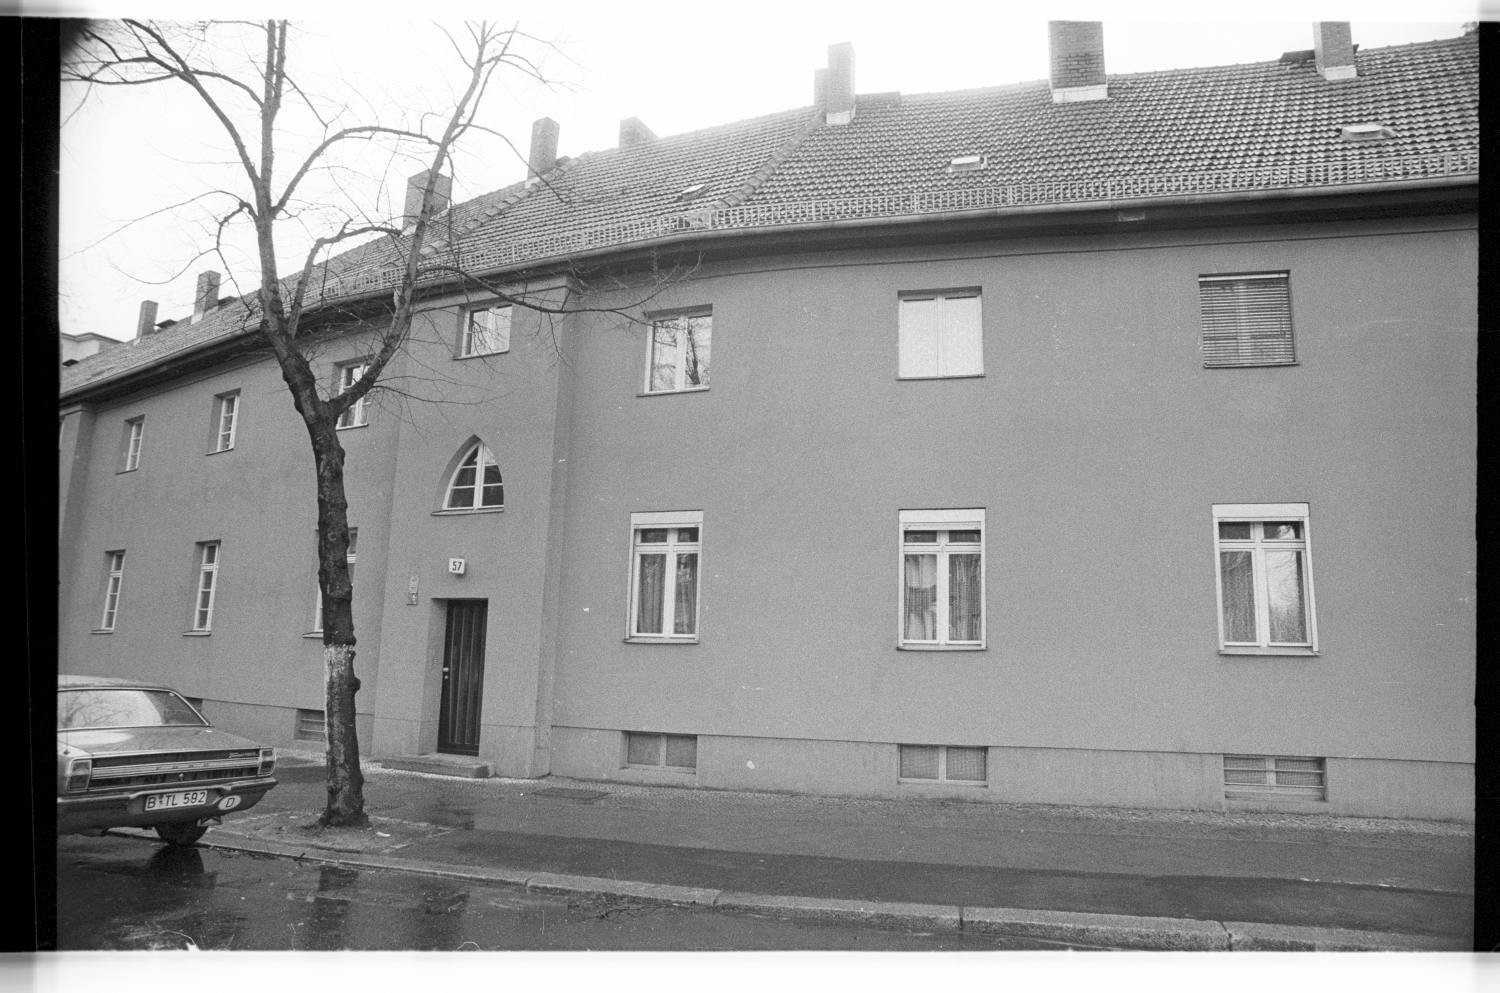 Kleinbildnegative: "Siedlung Lindenhof", Eythstraße, 1983 (Museen Tempelhof-Schöneberg/Jürgen Henschel RR-F)